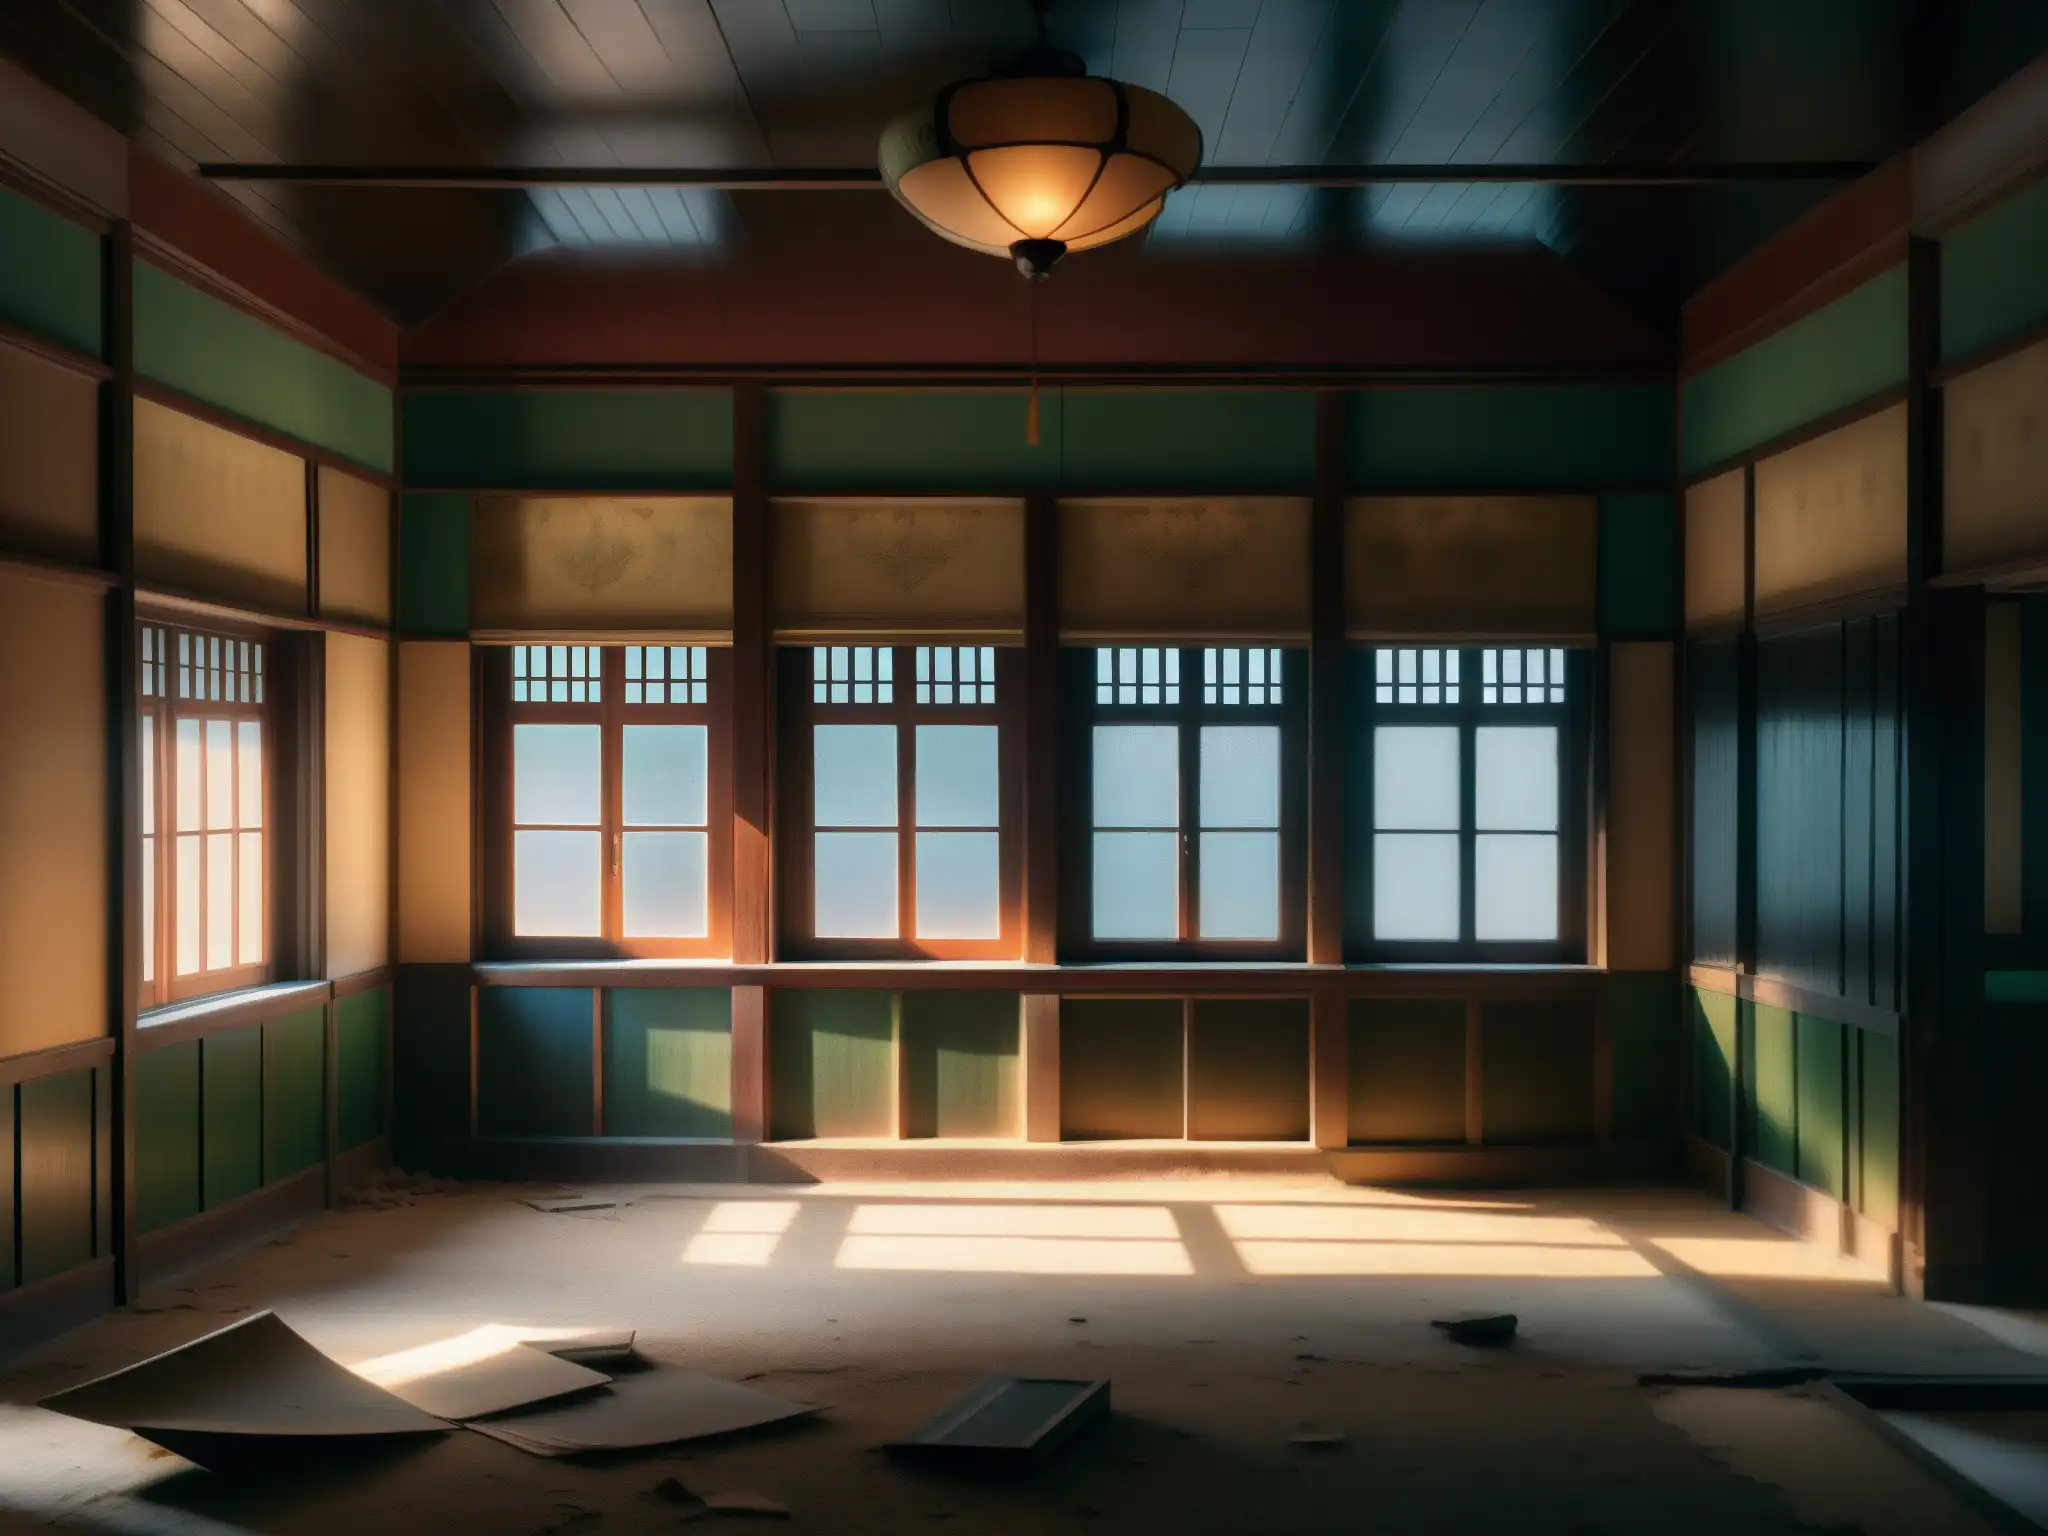 Explora el misterio del segundo piso abandonado de un edificio coreano, con sombras misteriosas y una atmósfera intrigante